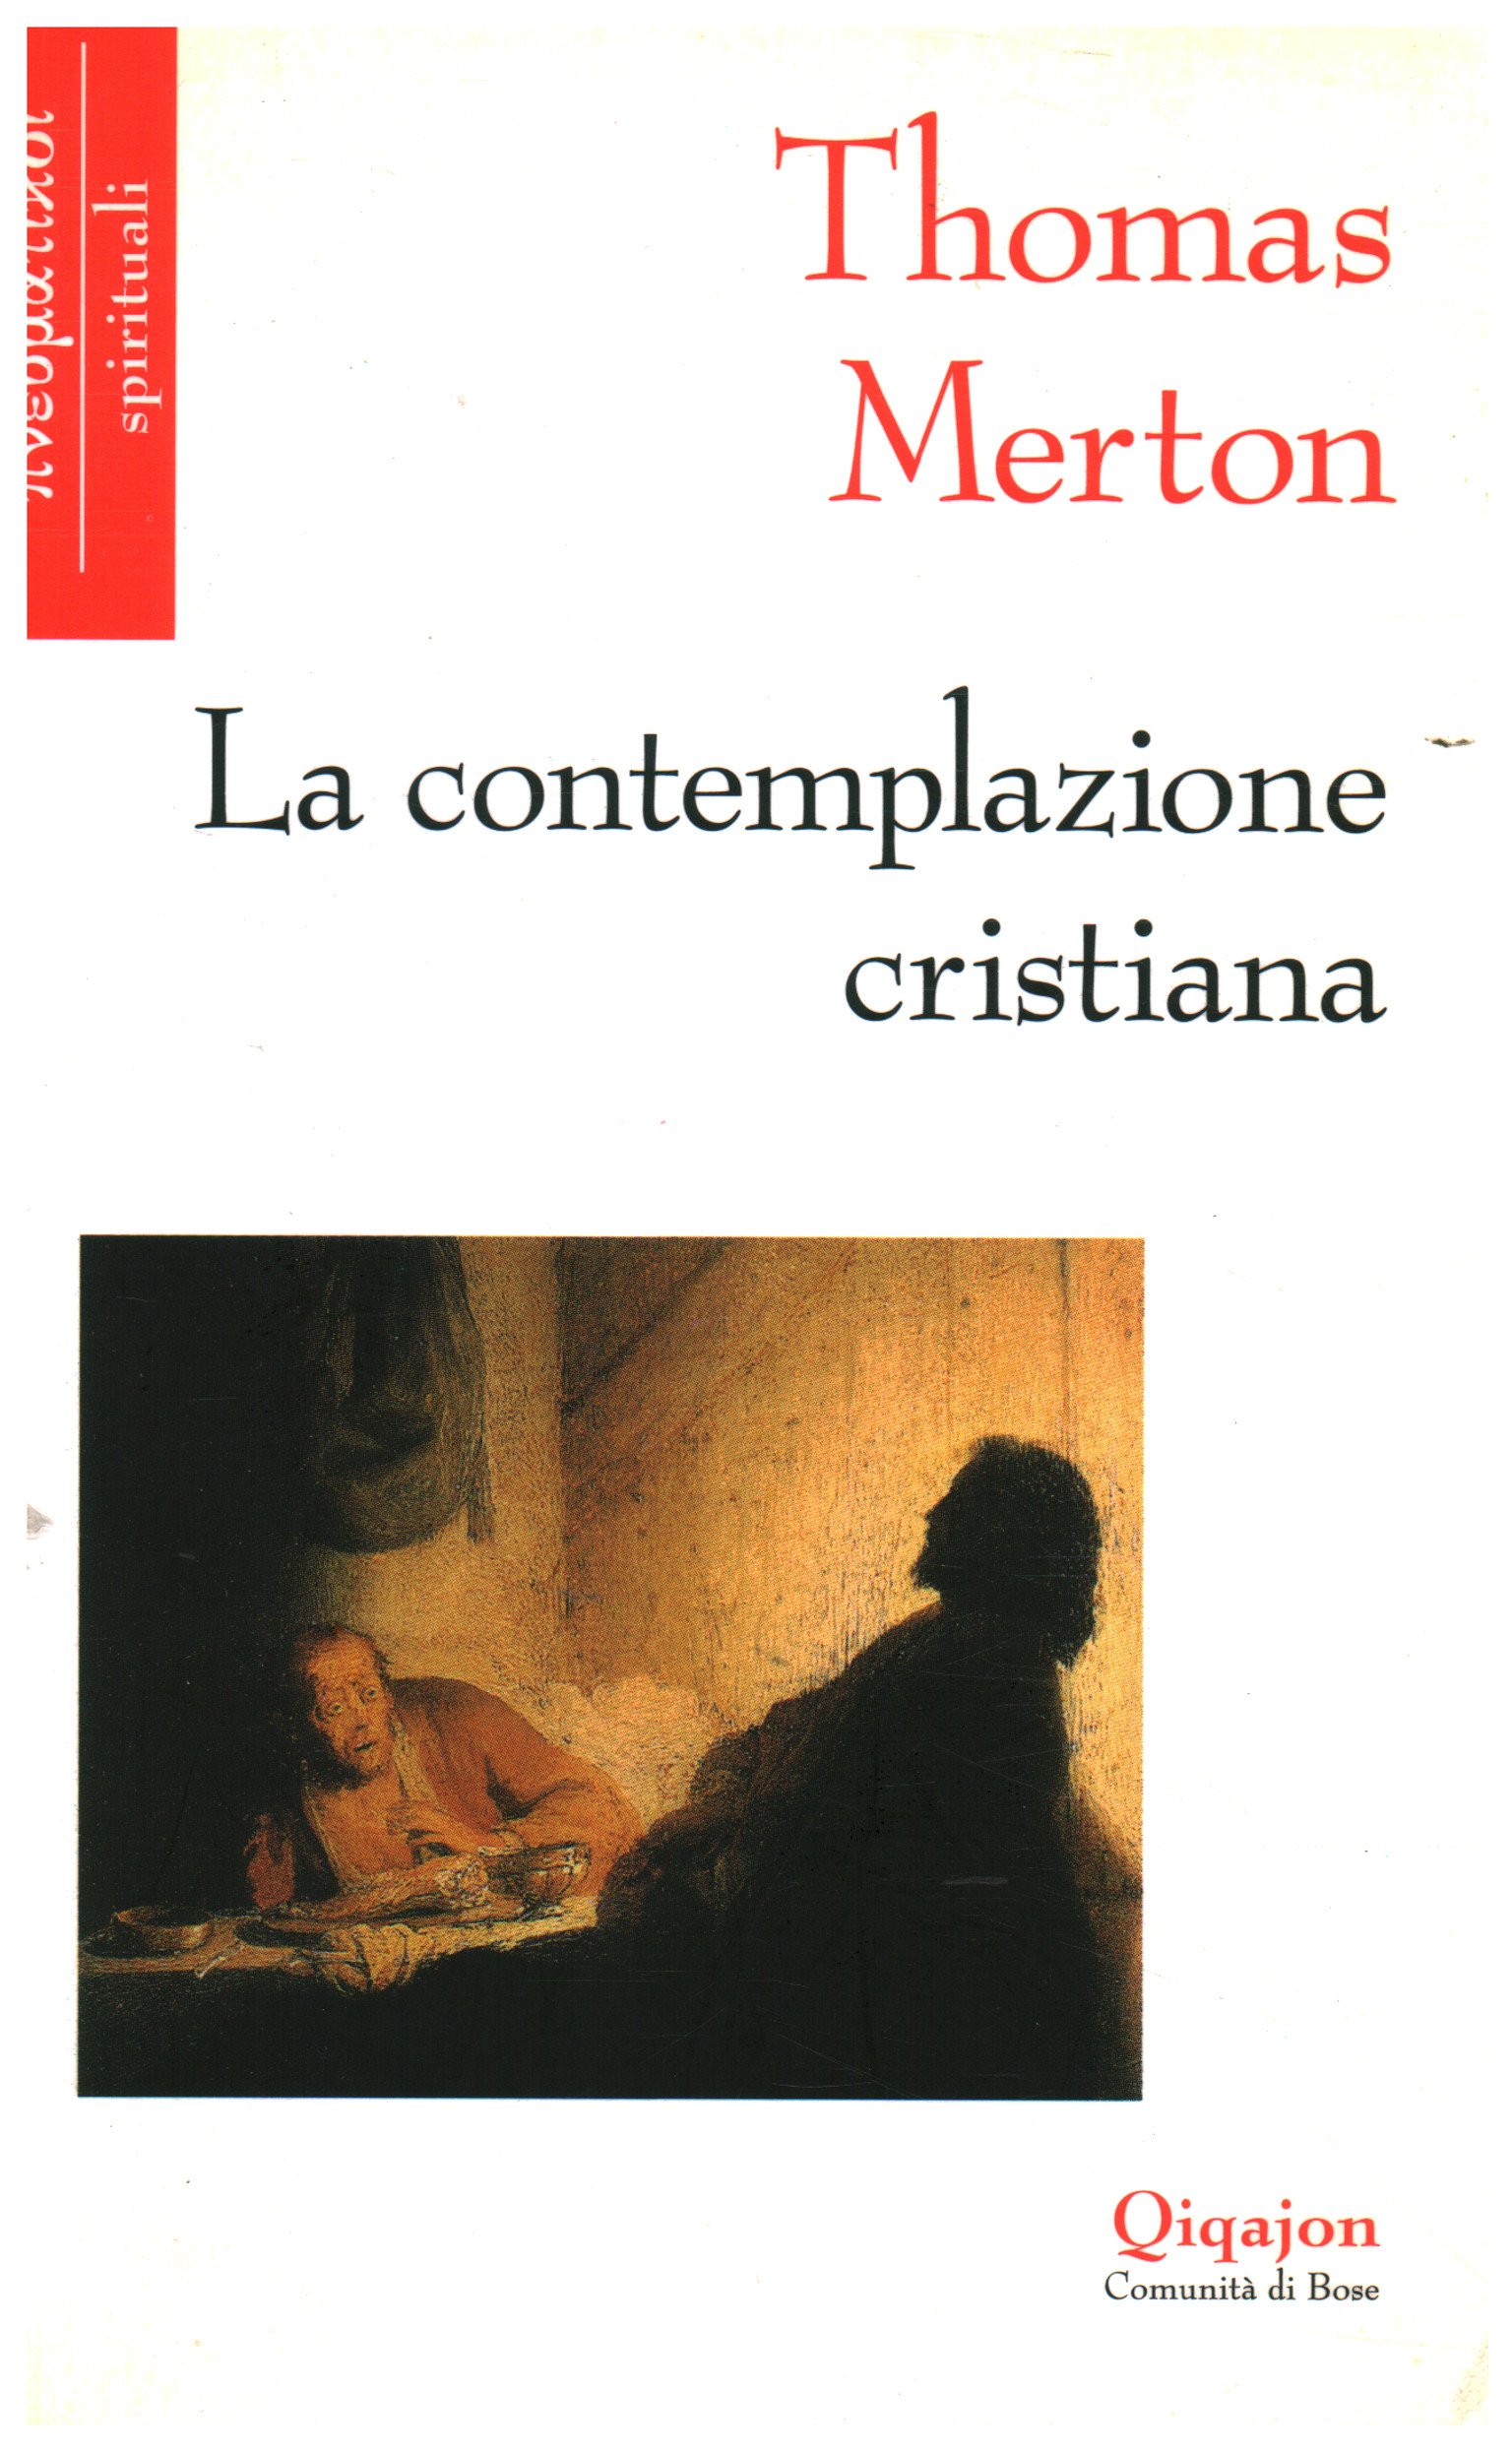 La contemplazione cristiana, Thomas Merton